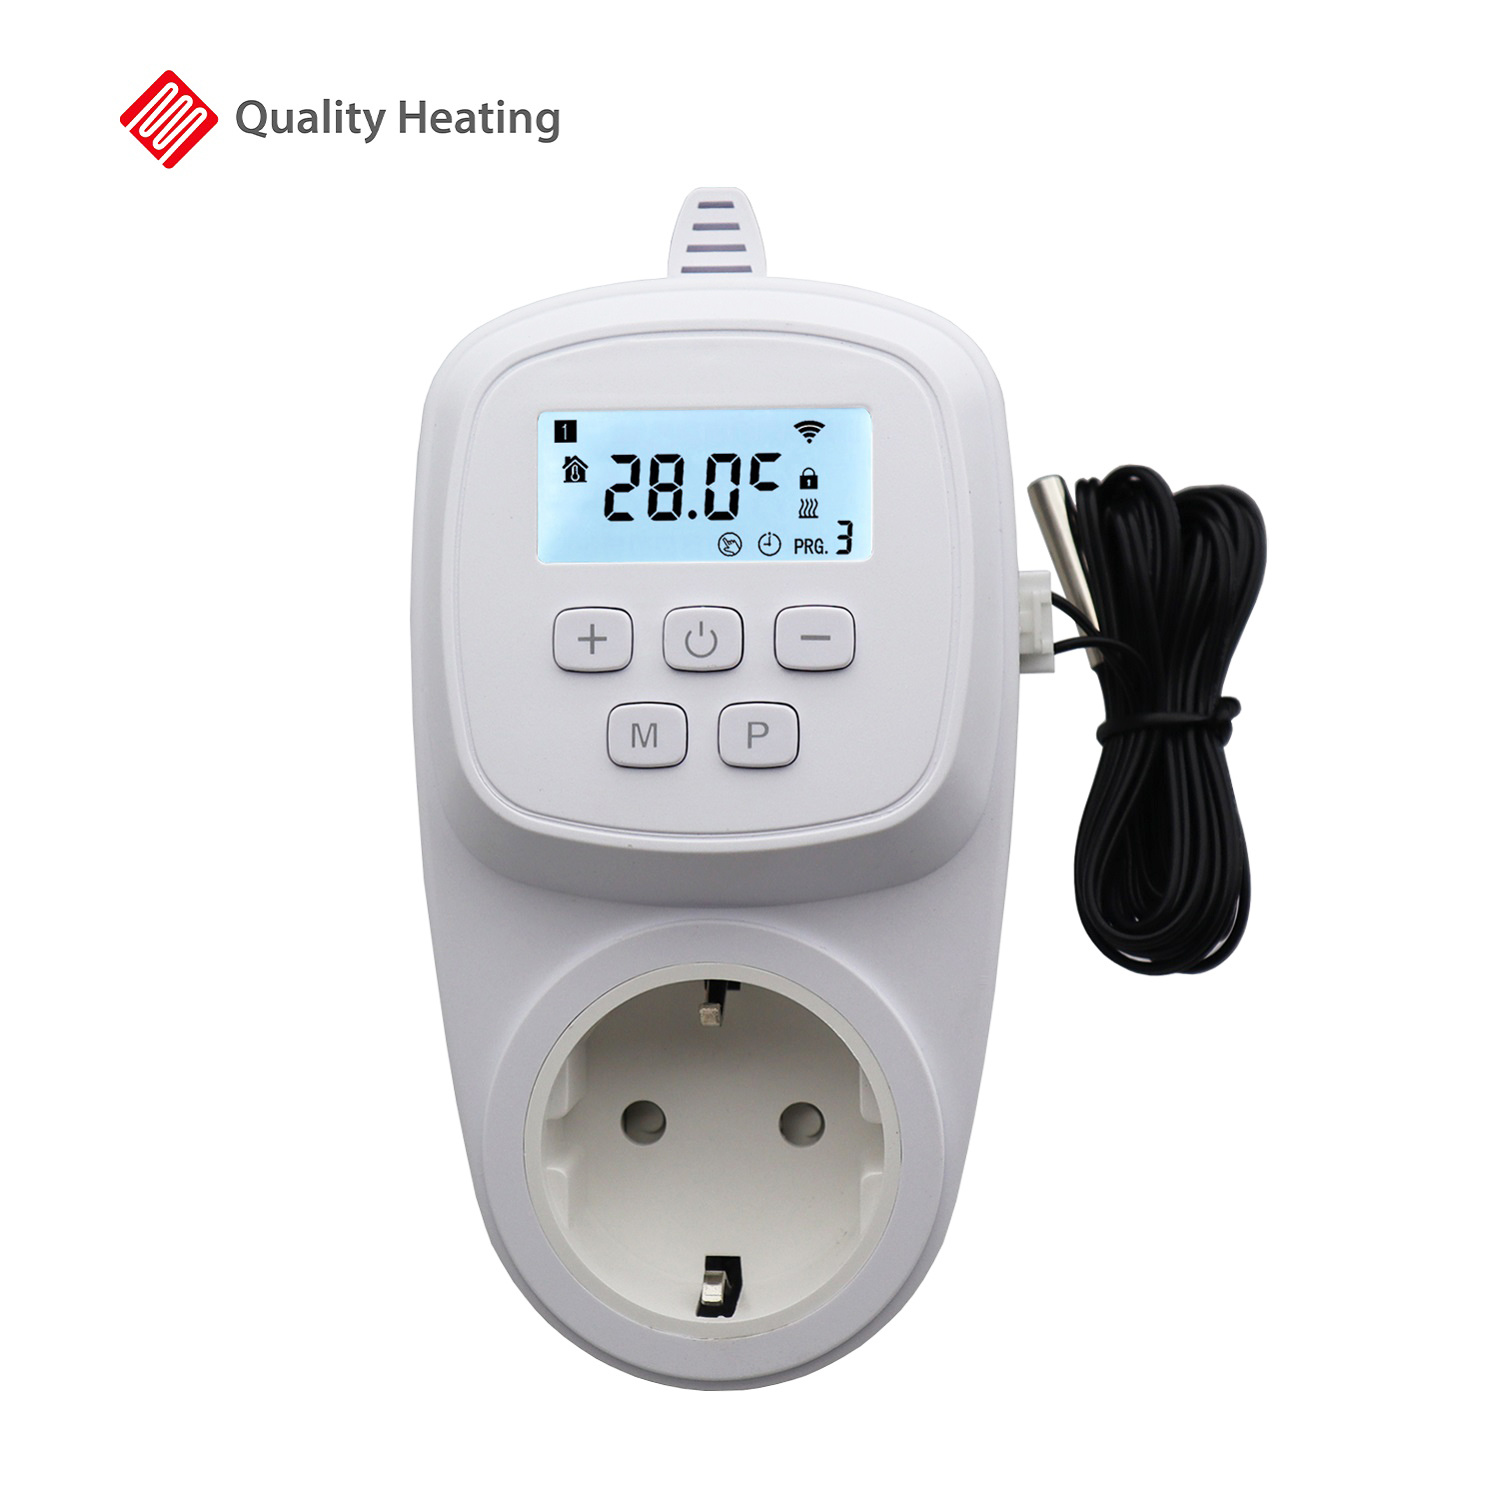 Moderniseren Krankzinnigheid Intrekking Wifi stopcontact thermostaat met losse sensor QH-42 - Infraroodverwarming  kopen? | Quality Heating Laagste prijsgarantie!